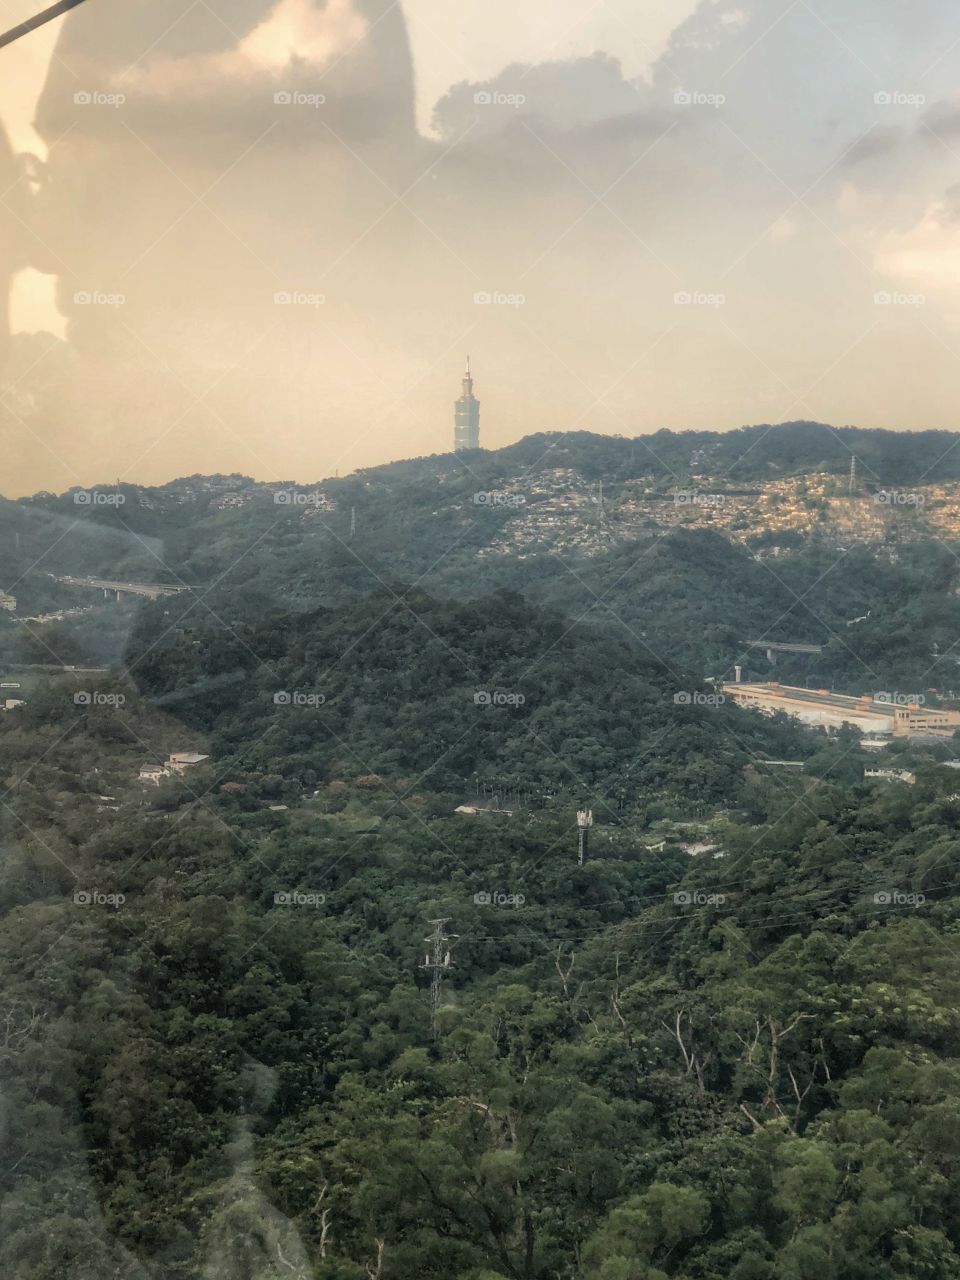 Taipei 101 via Maokong